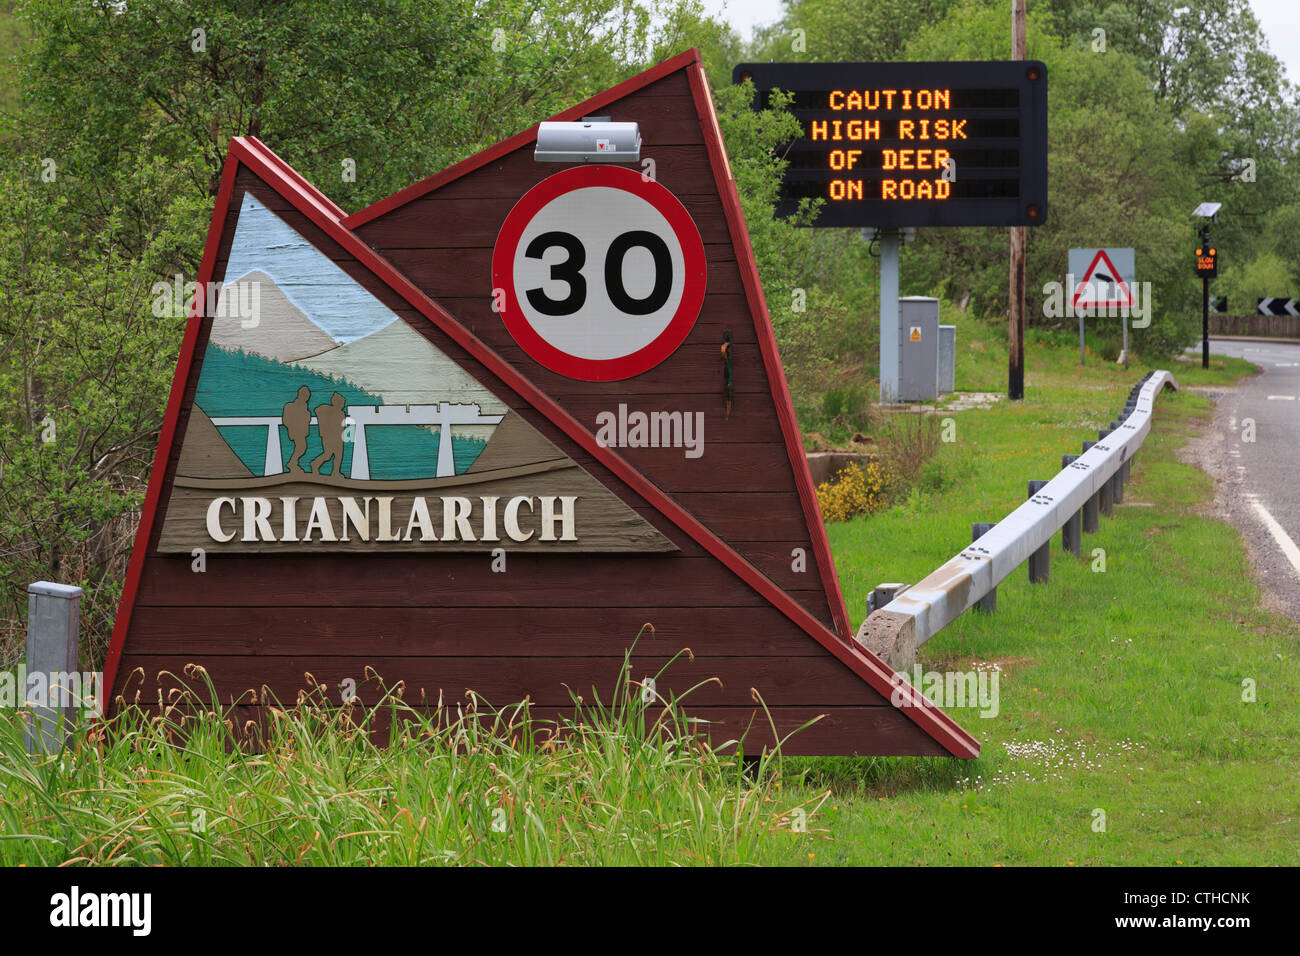 Il nome del luogo e 30 mph segnale di limite di velocità sulla A85 con la matrice di segno 'avvertenza prestare attenzione ad alto rischio di cervidi' Crianlarich Scozia UK Foto Stock